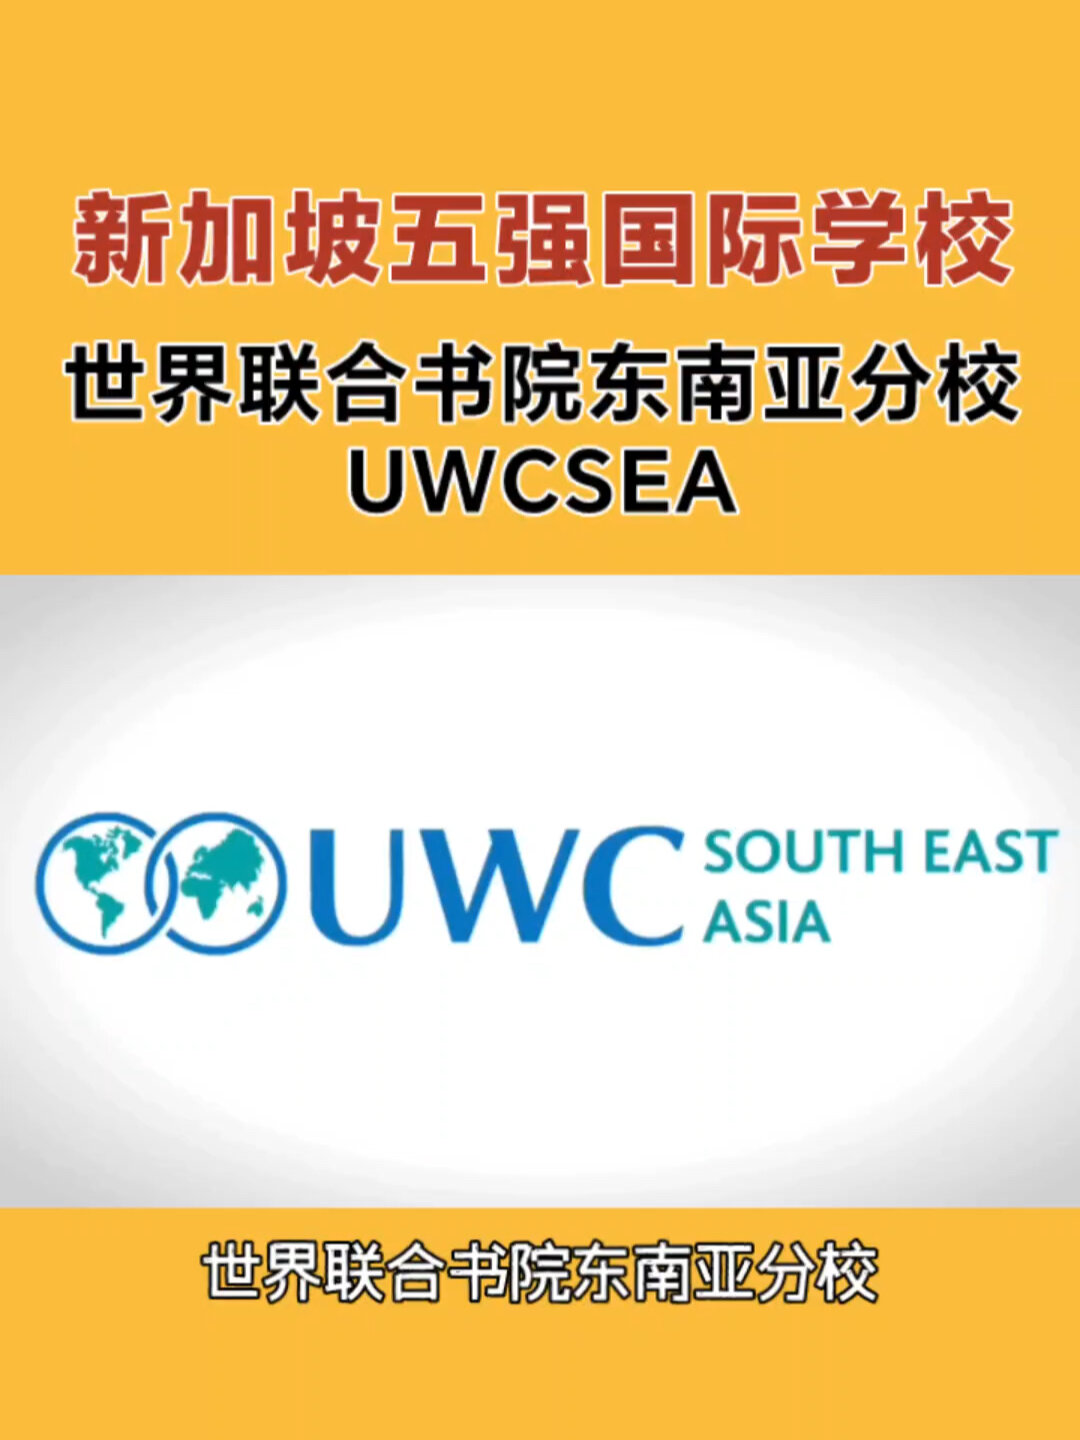 新加坡uwc世界联合学院图片